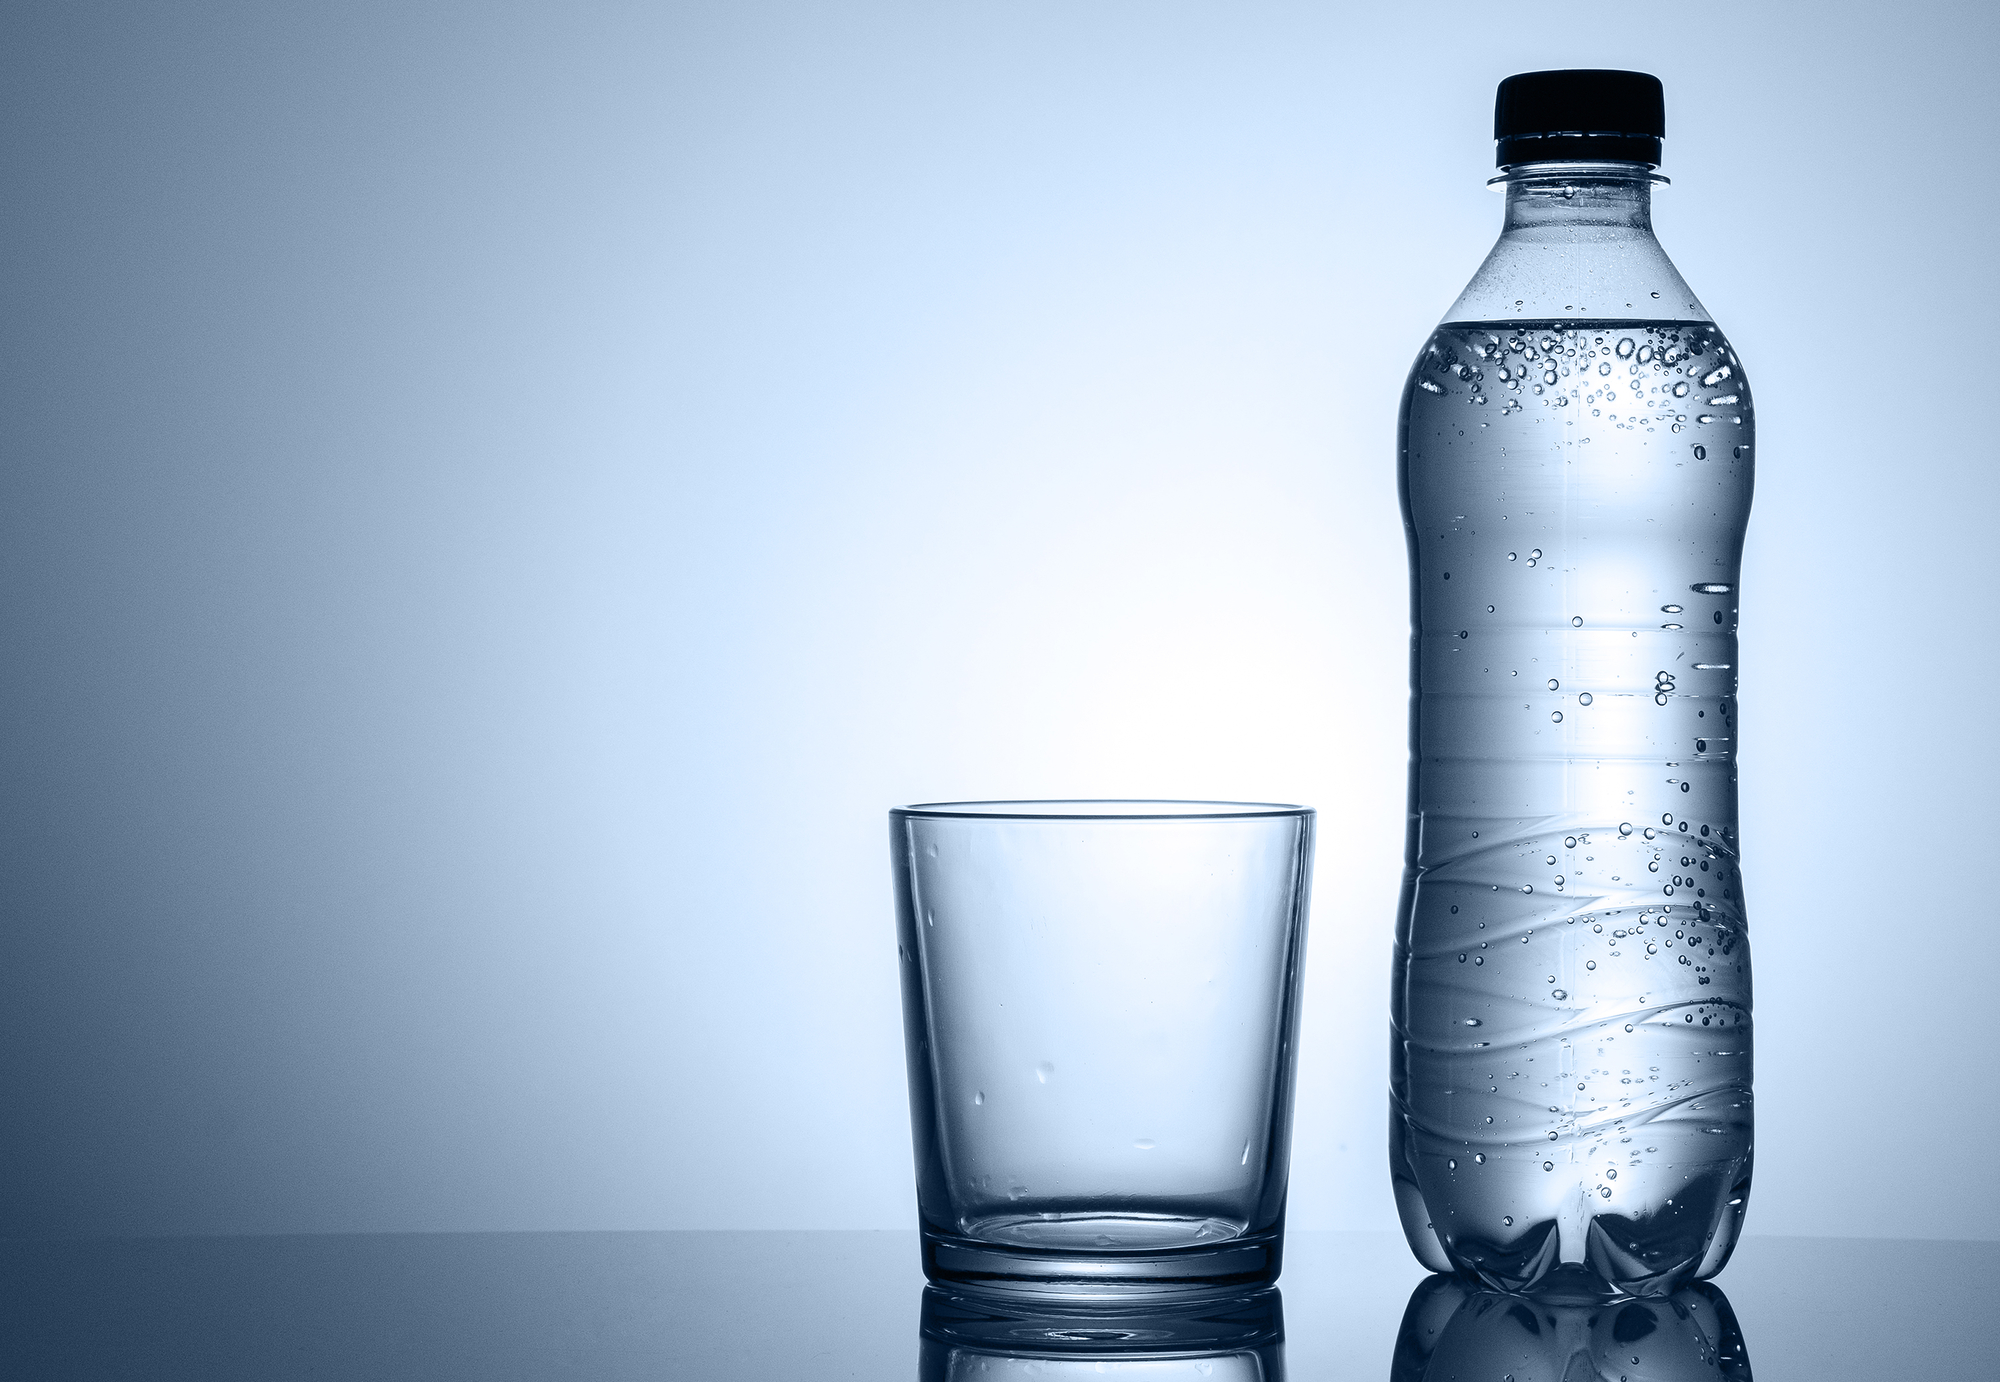 Acqua minerale: Un lettore segnala una 'strana reazione' in una bottiglia